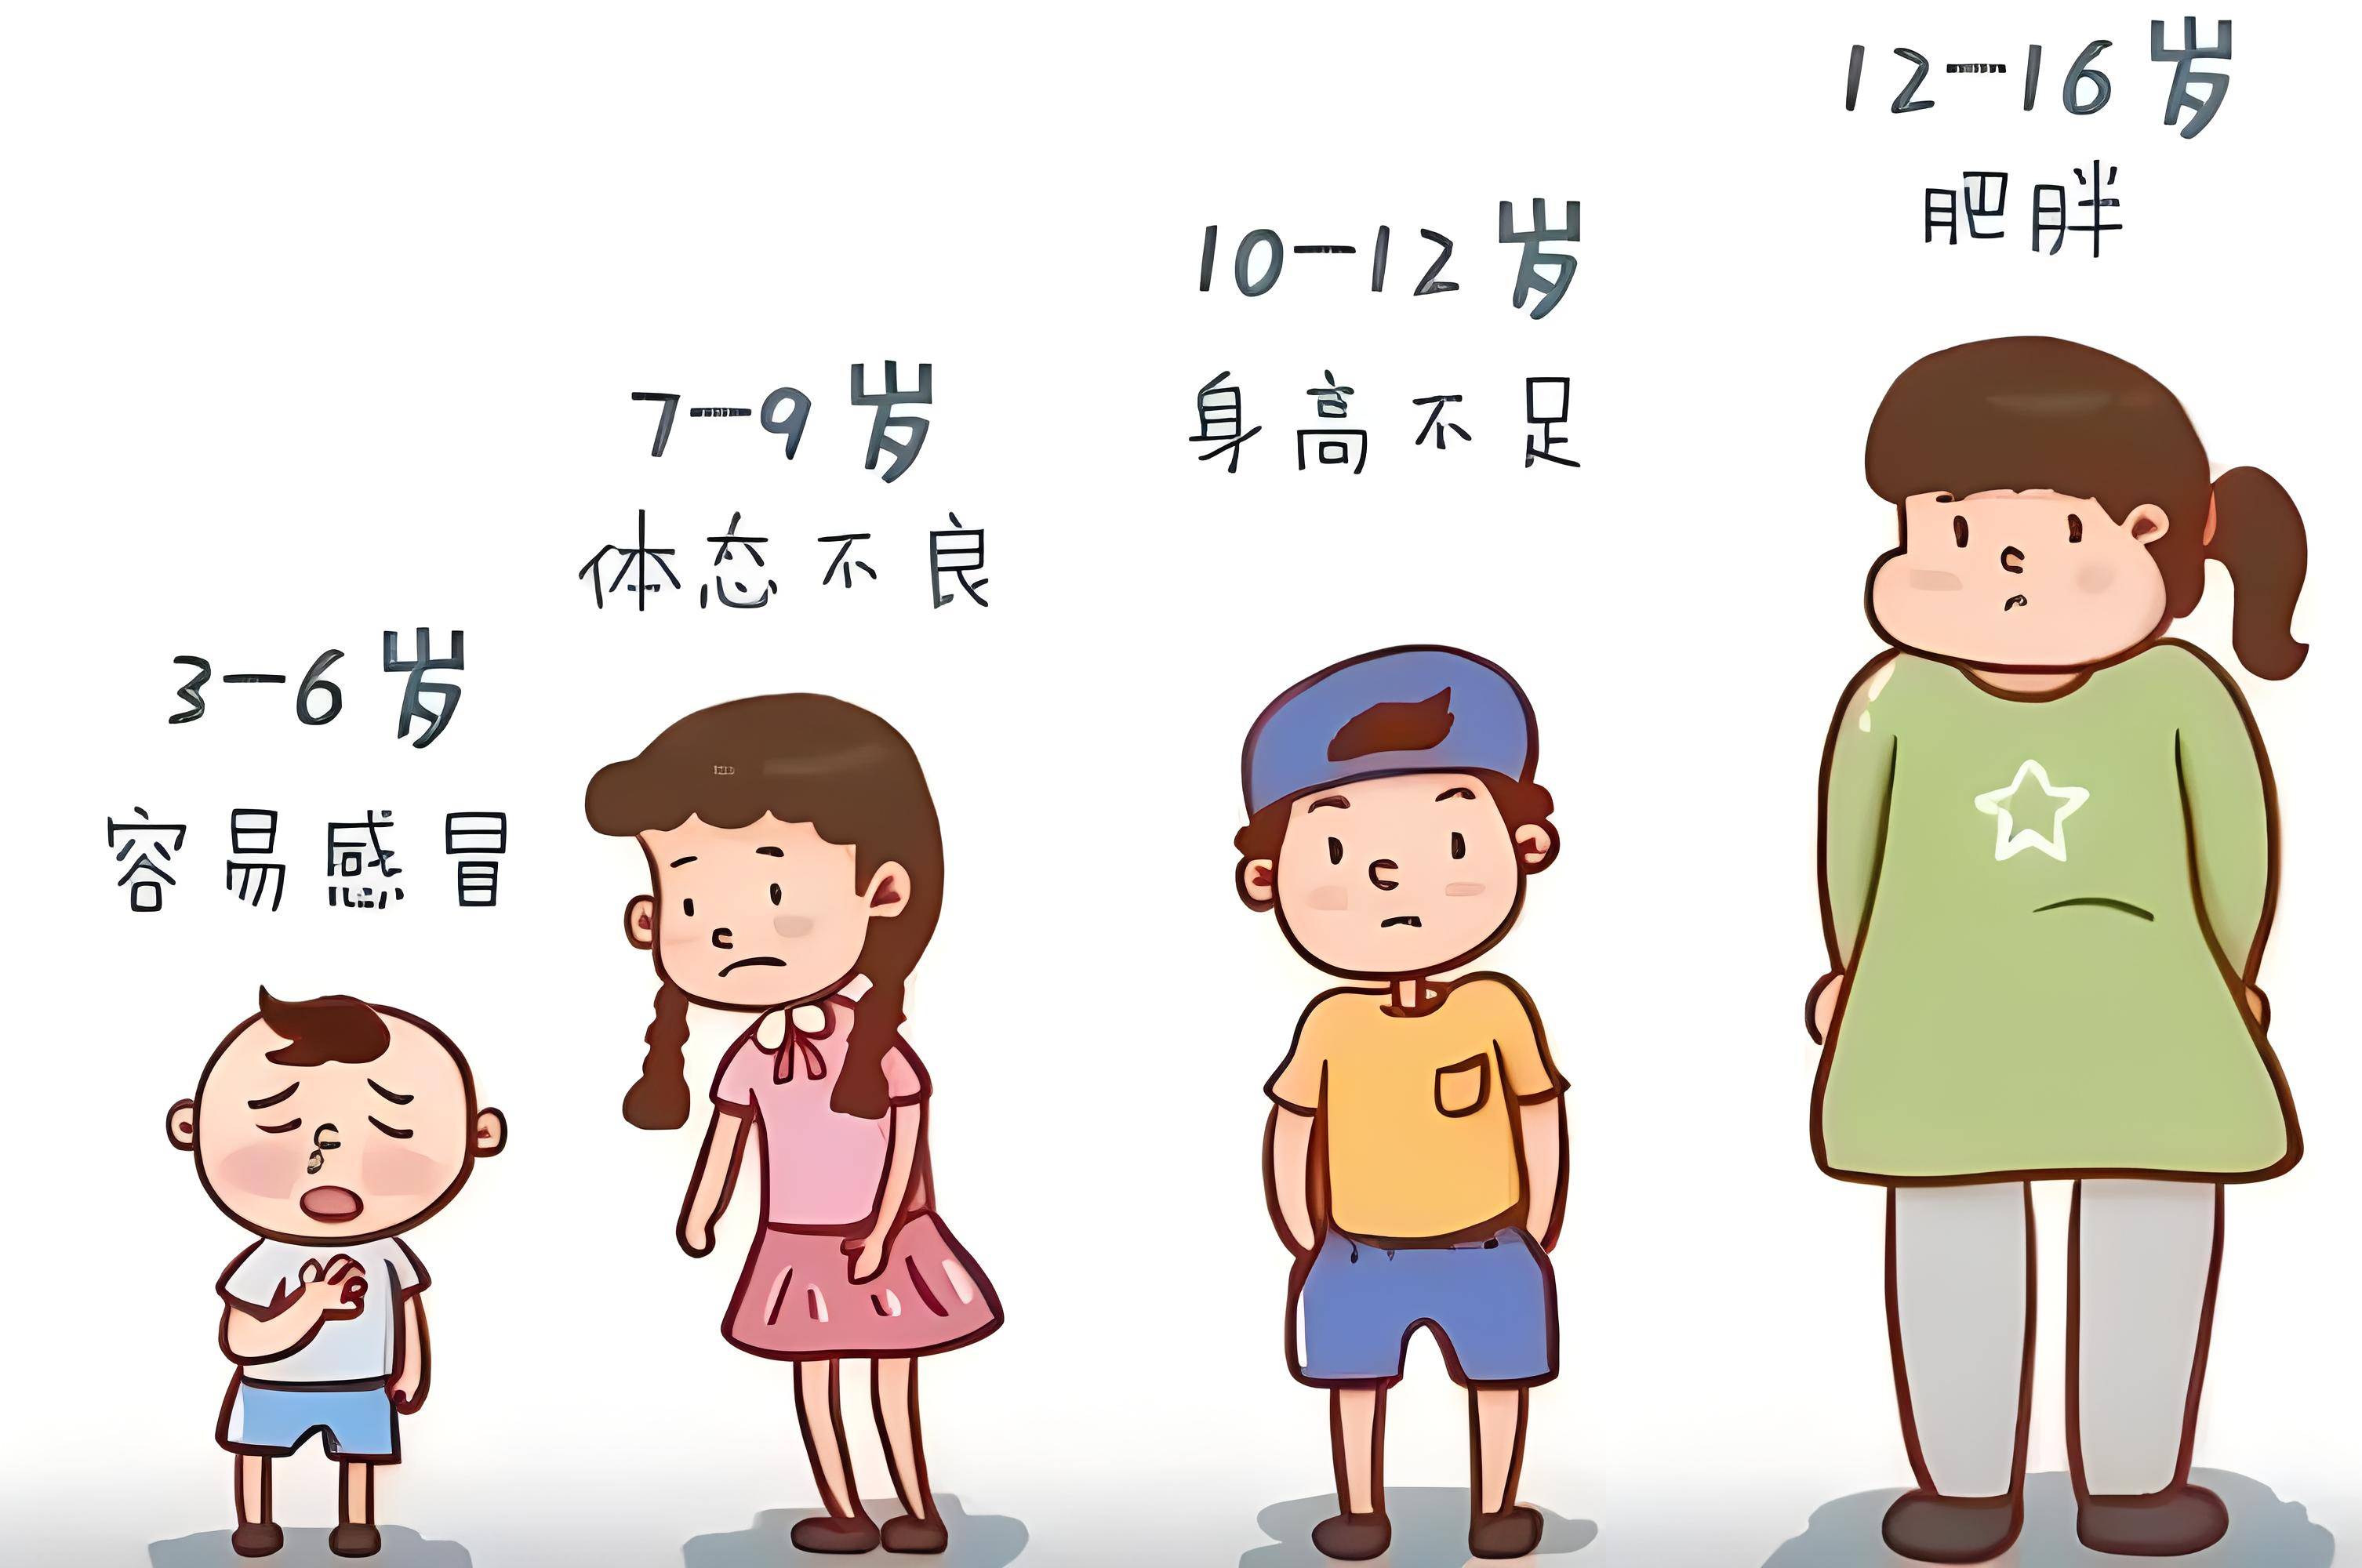 重庆天佑儿童医院:孩子发育迟缓如何长高?